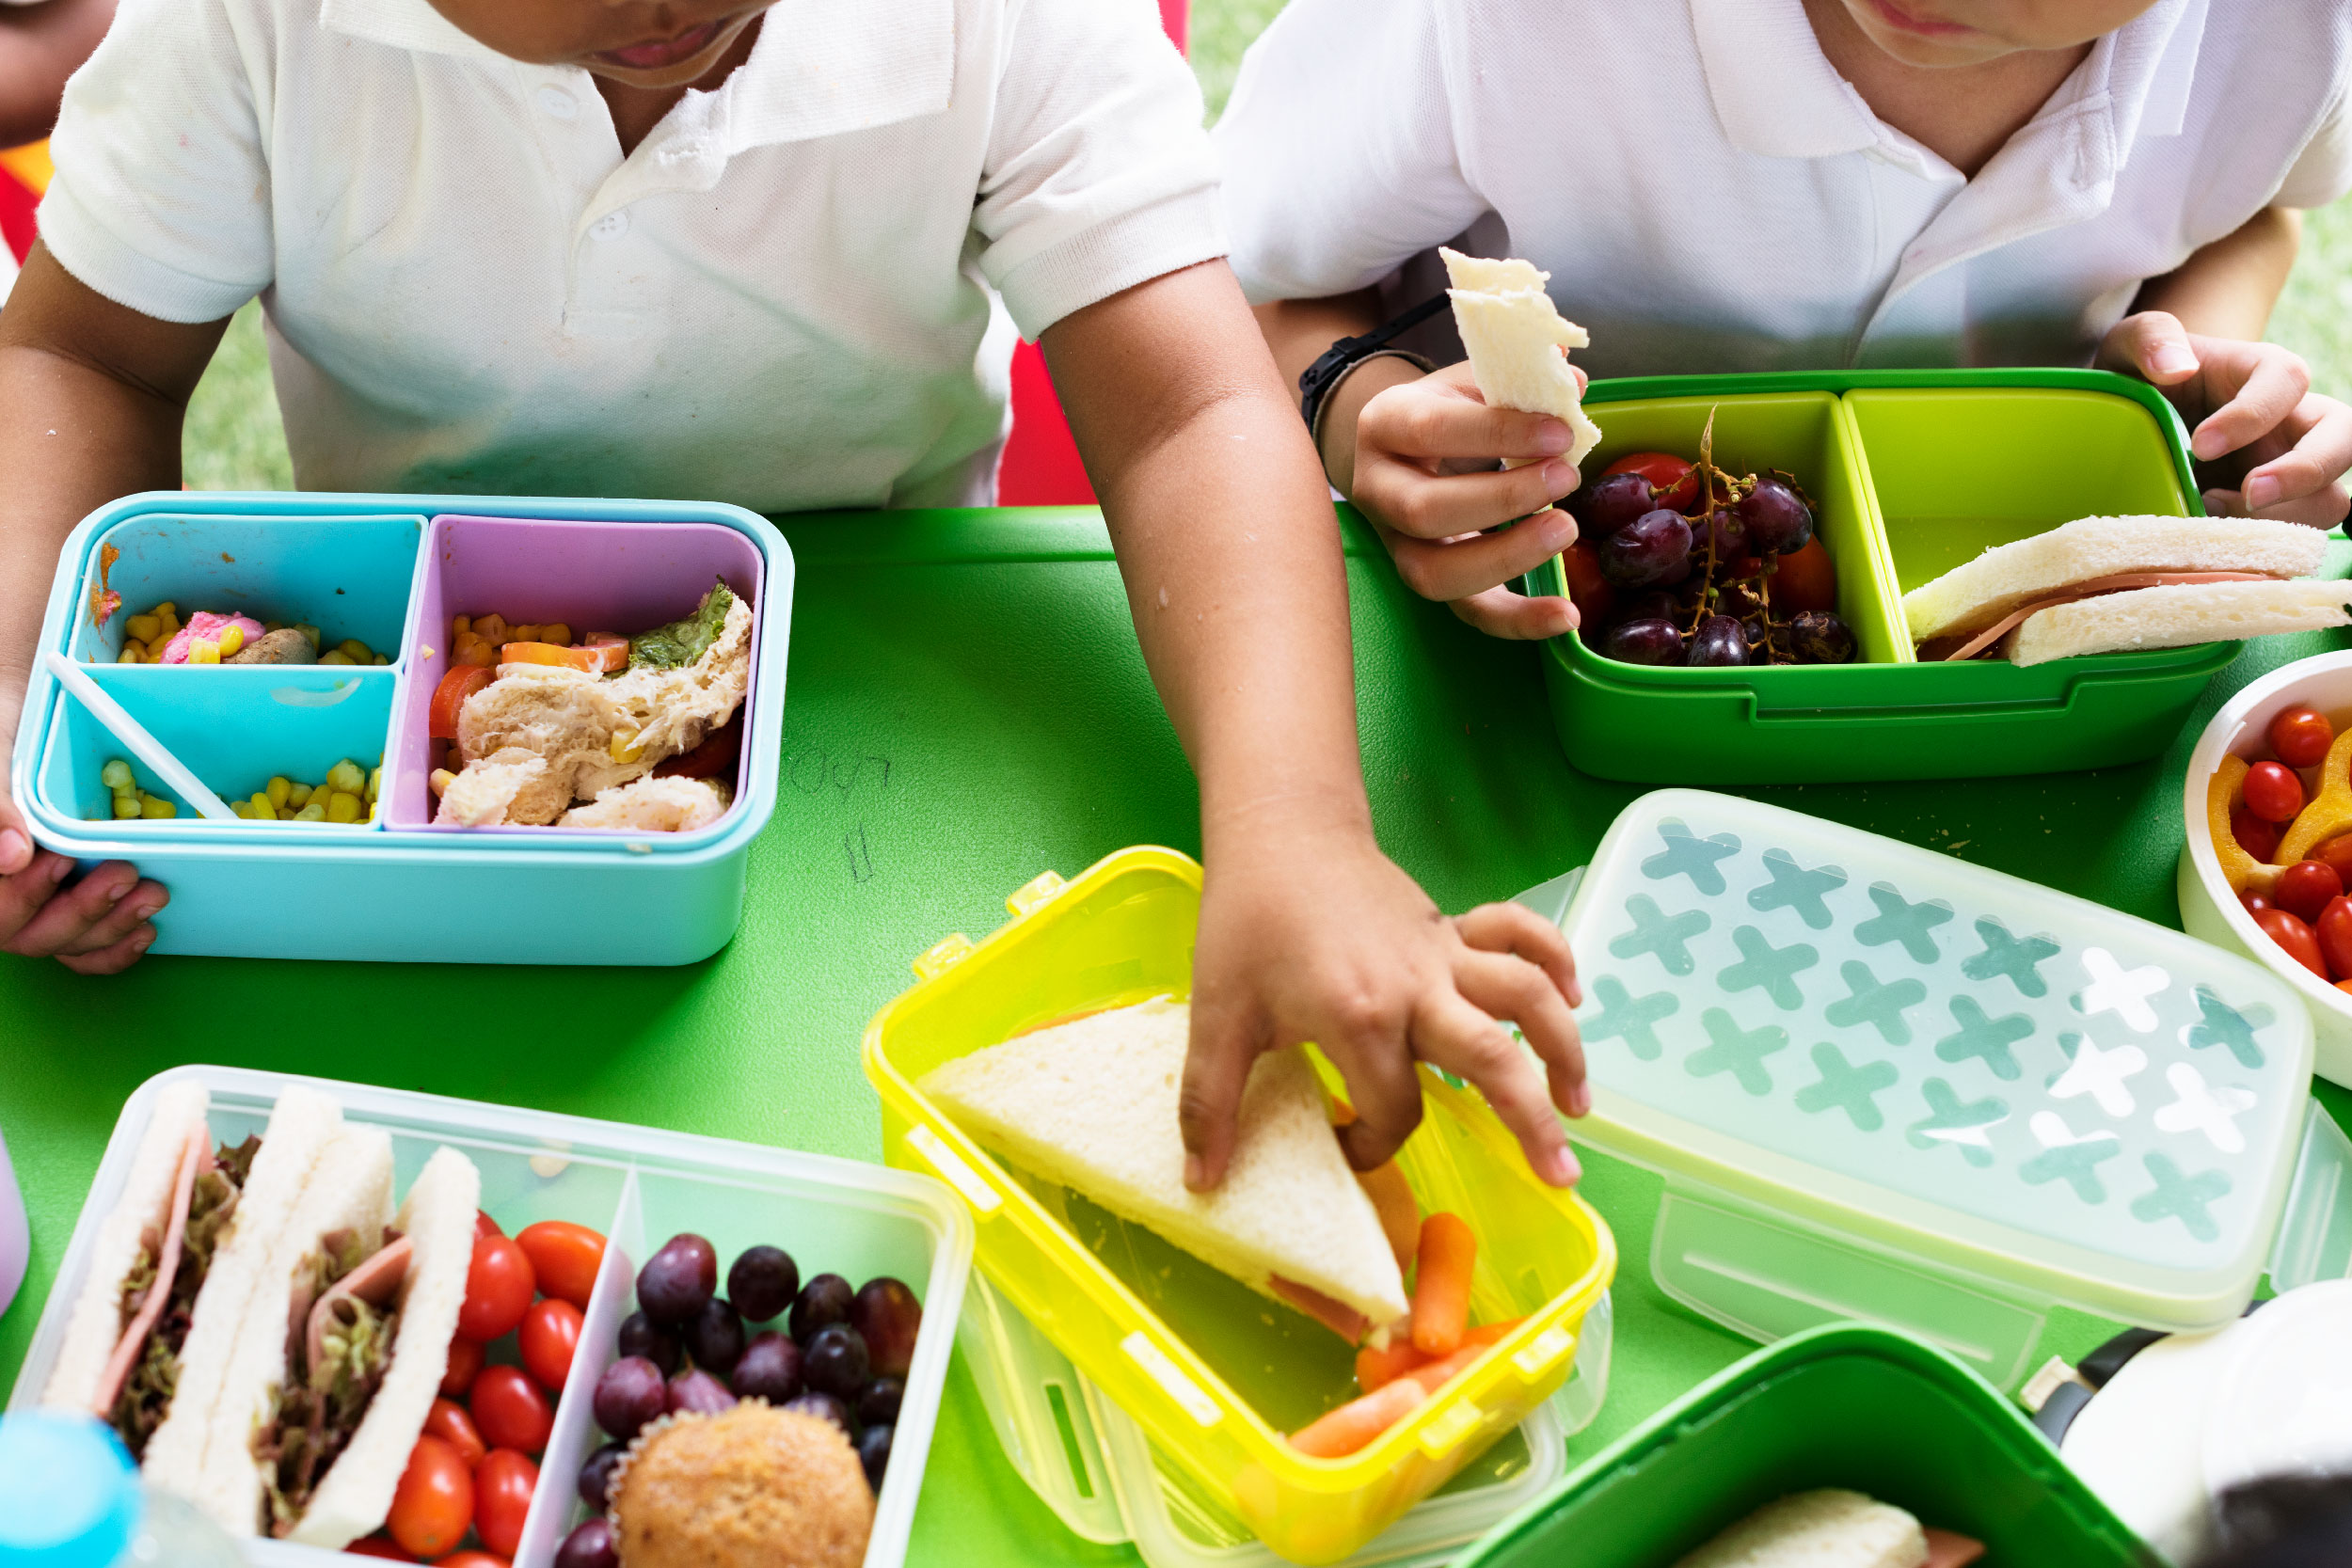 Imagem parcial de crianças comendo lanche sobre uma mesa verde. O lanche está disposto sobre a mesa em potes coloridos e podemos observar frutas, pães e milho.